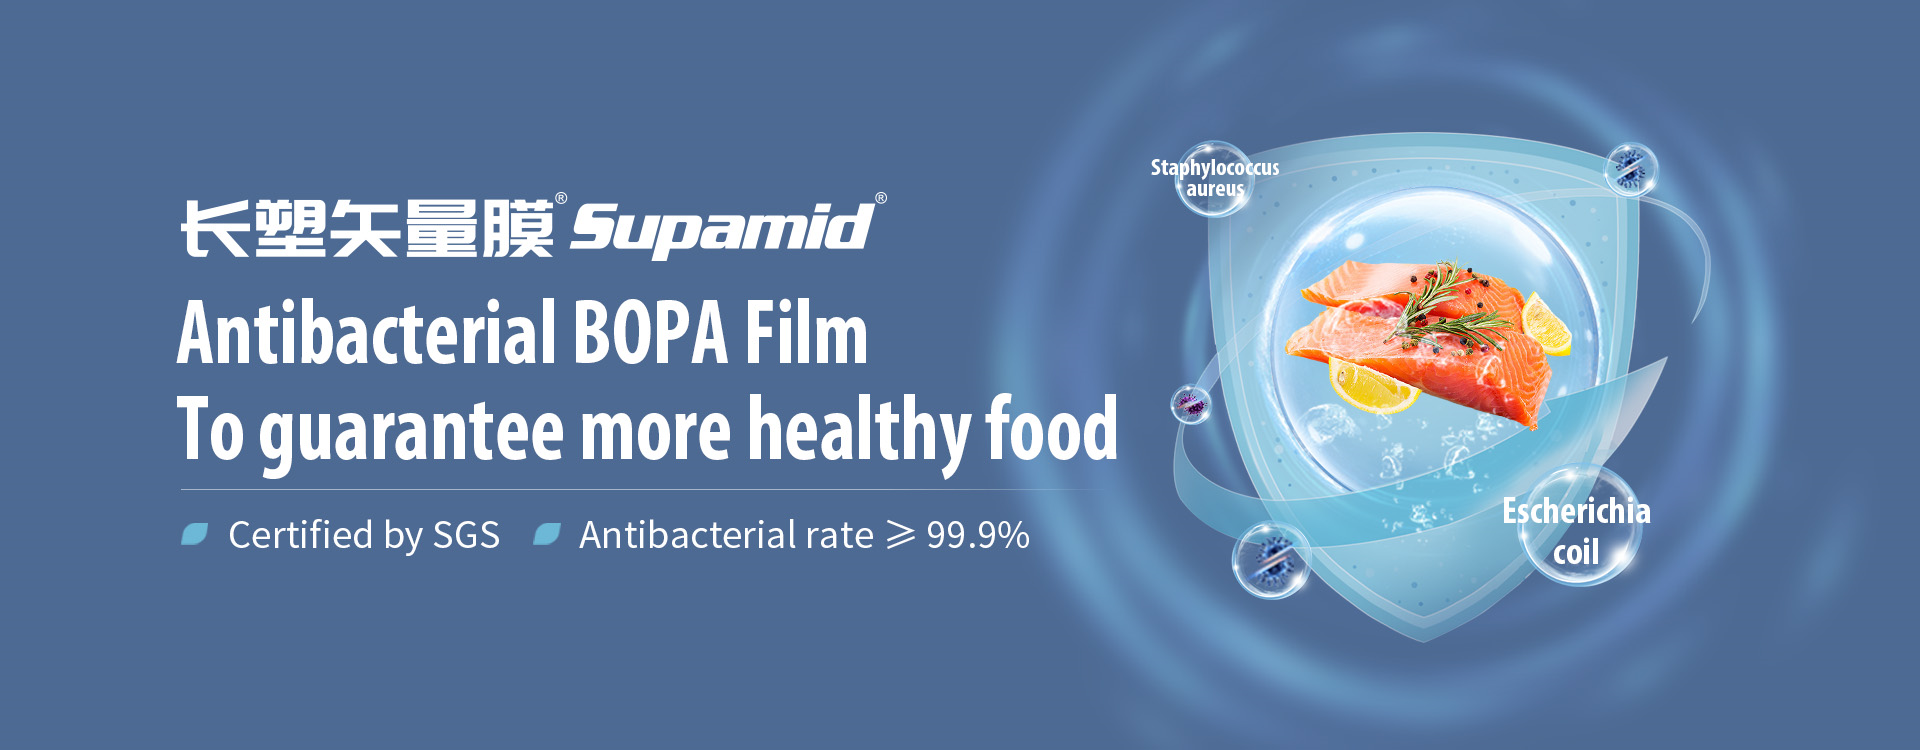 https://www.changsufilm.com/antibacterial-bopa-film-product/